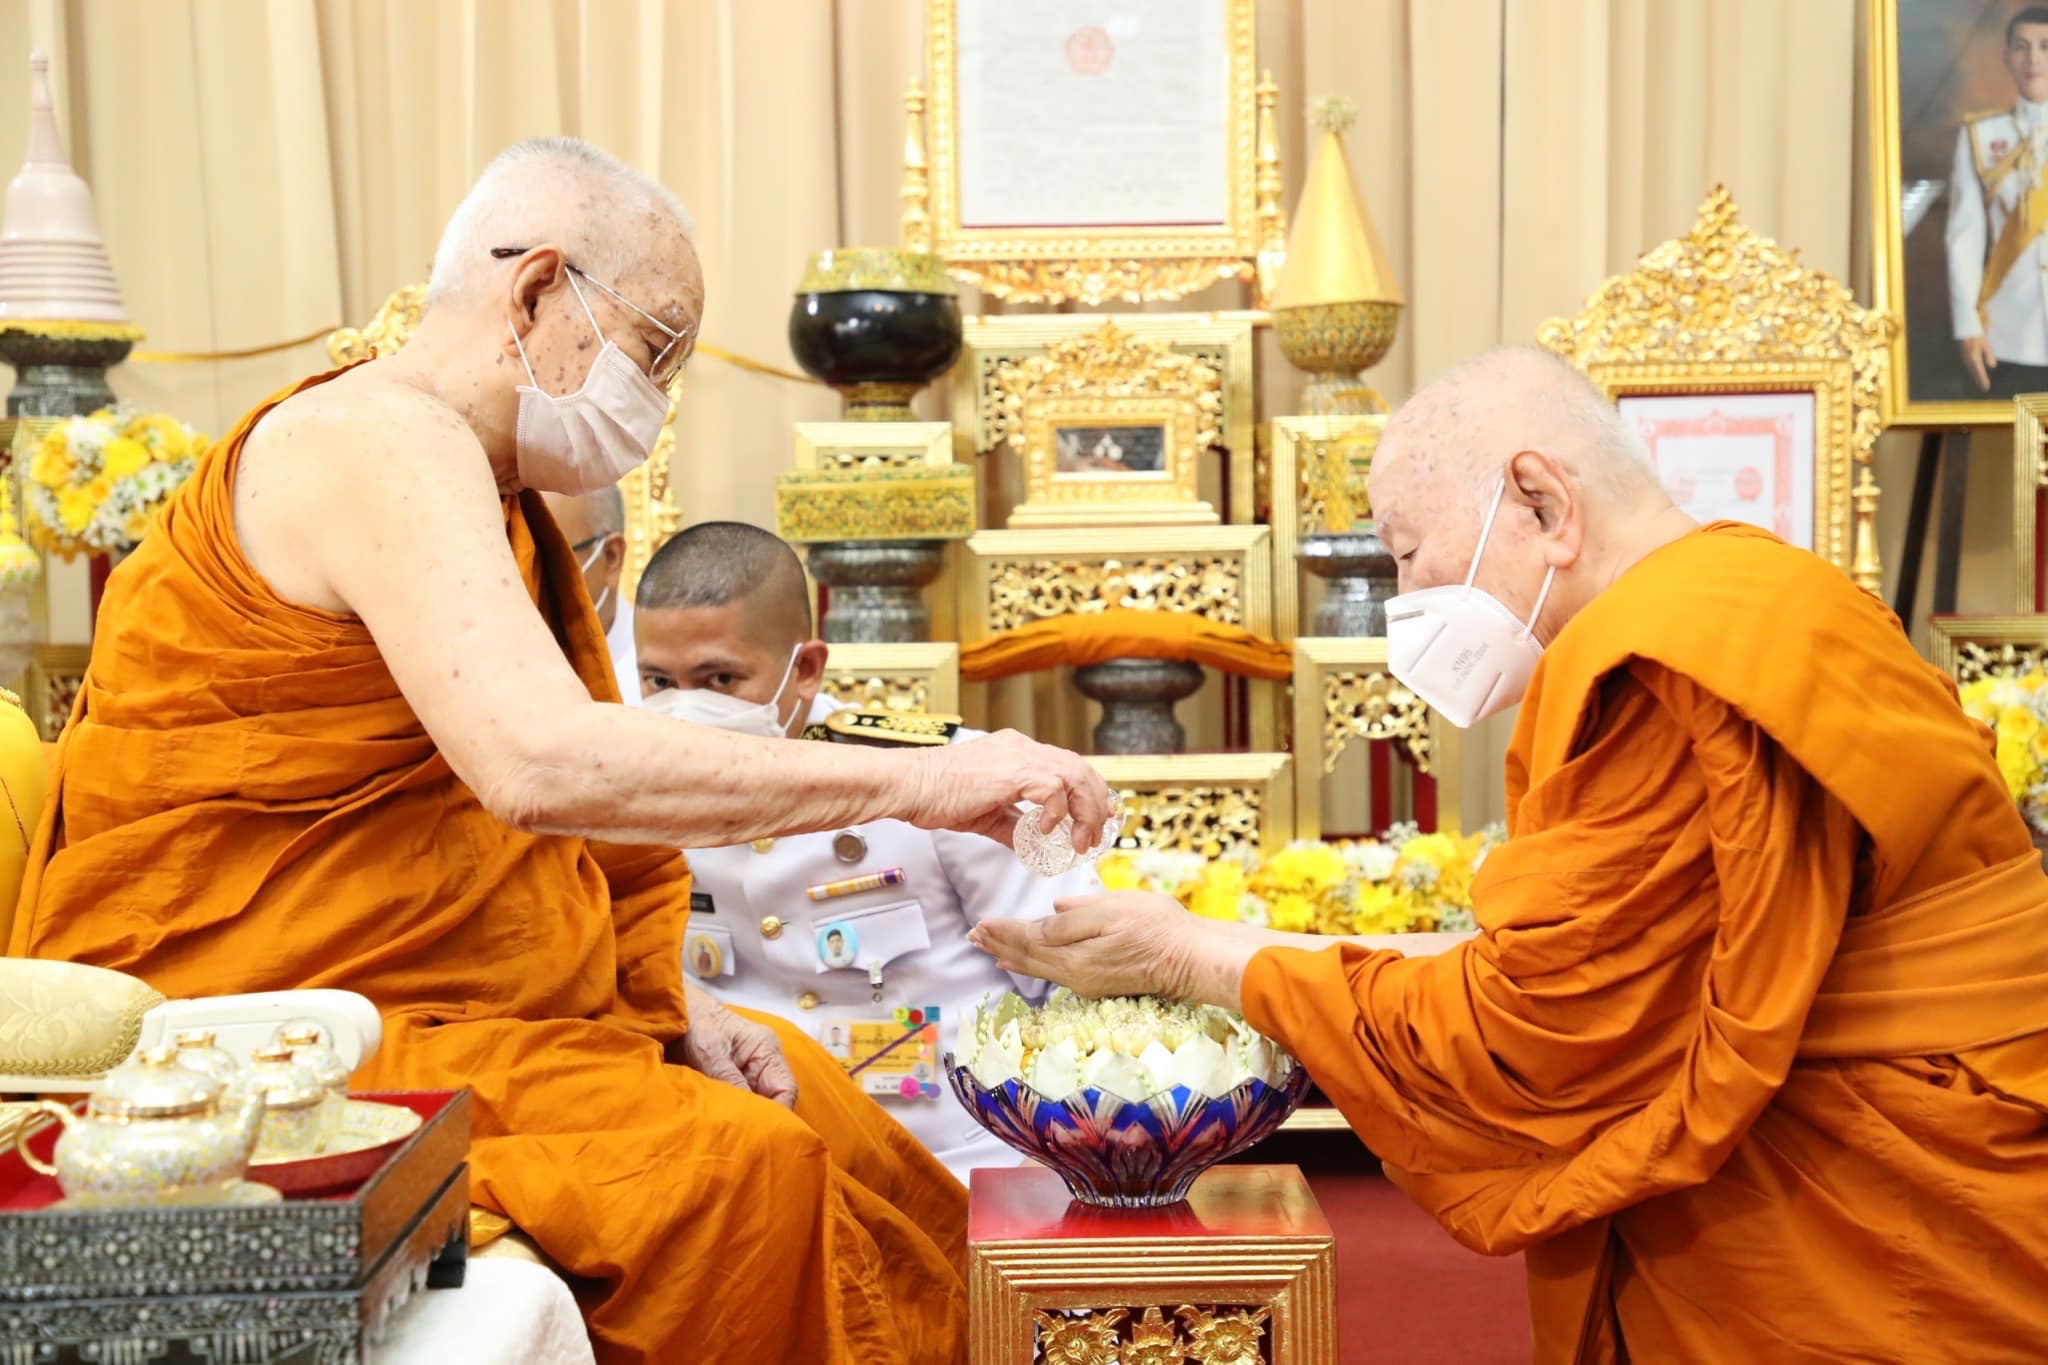 “พระสังฆราช” เสด็จราชบุรี ทรงเป็นปธ.บำเพ็ญกุศลฉลองอายุ 90 ปี “พระพรหมมงคลวัชราจารย์”